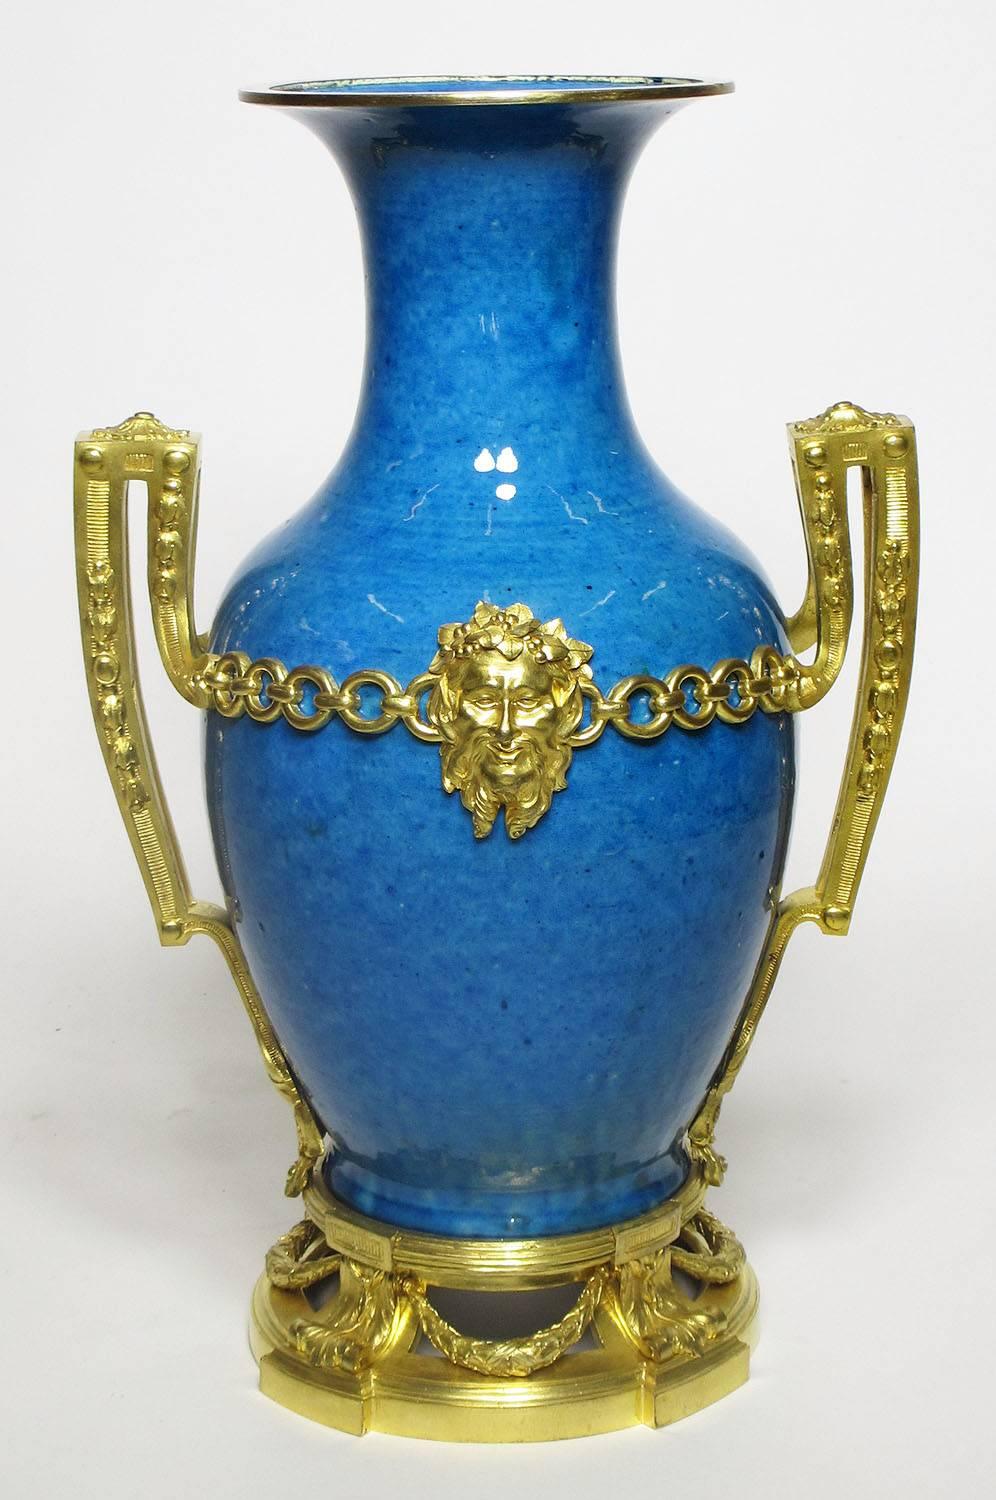 Très belle et impressionnante paire de vases de style Louis XVI français du XIXe siècle, montés en bronze émaillé bleu, avec des masques allégoriques, des anneaux et des couronnes. La porcelaine est probablement chinoise du XVIIIe siècle, période